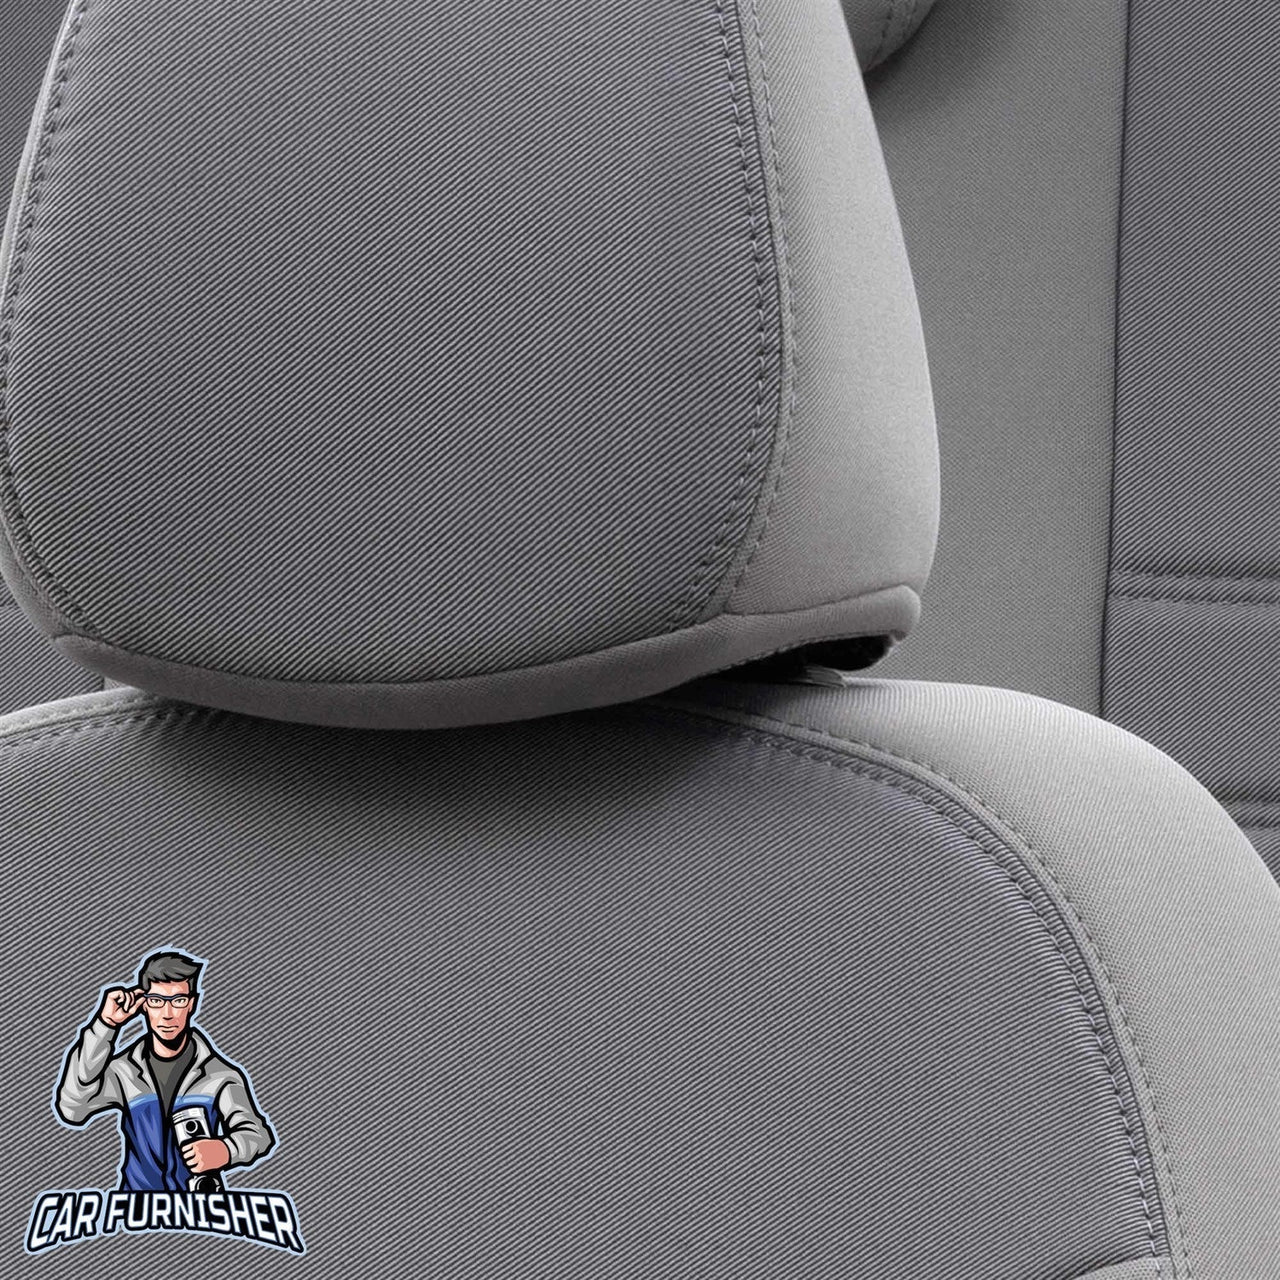 Chevrolet Spark Seat Covers Original Jacquard Design Gray Jacquard Fabric